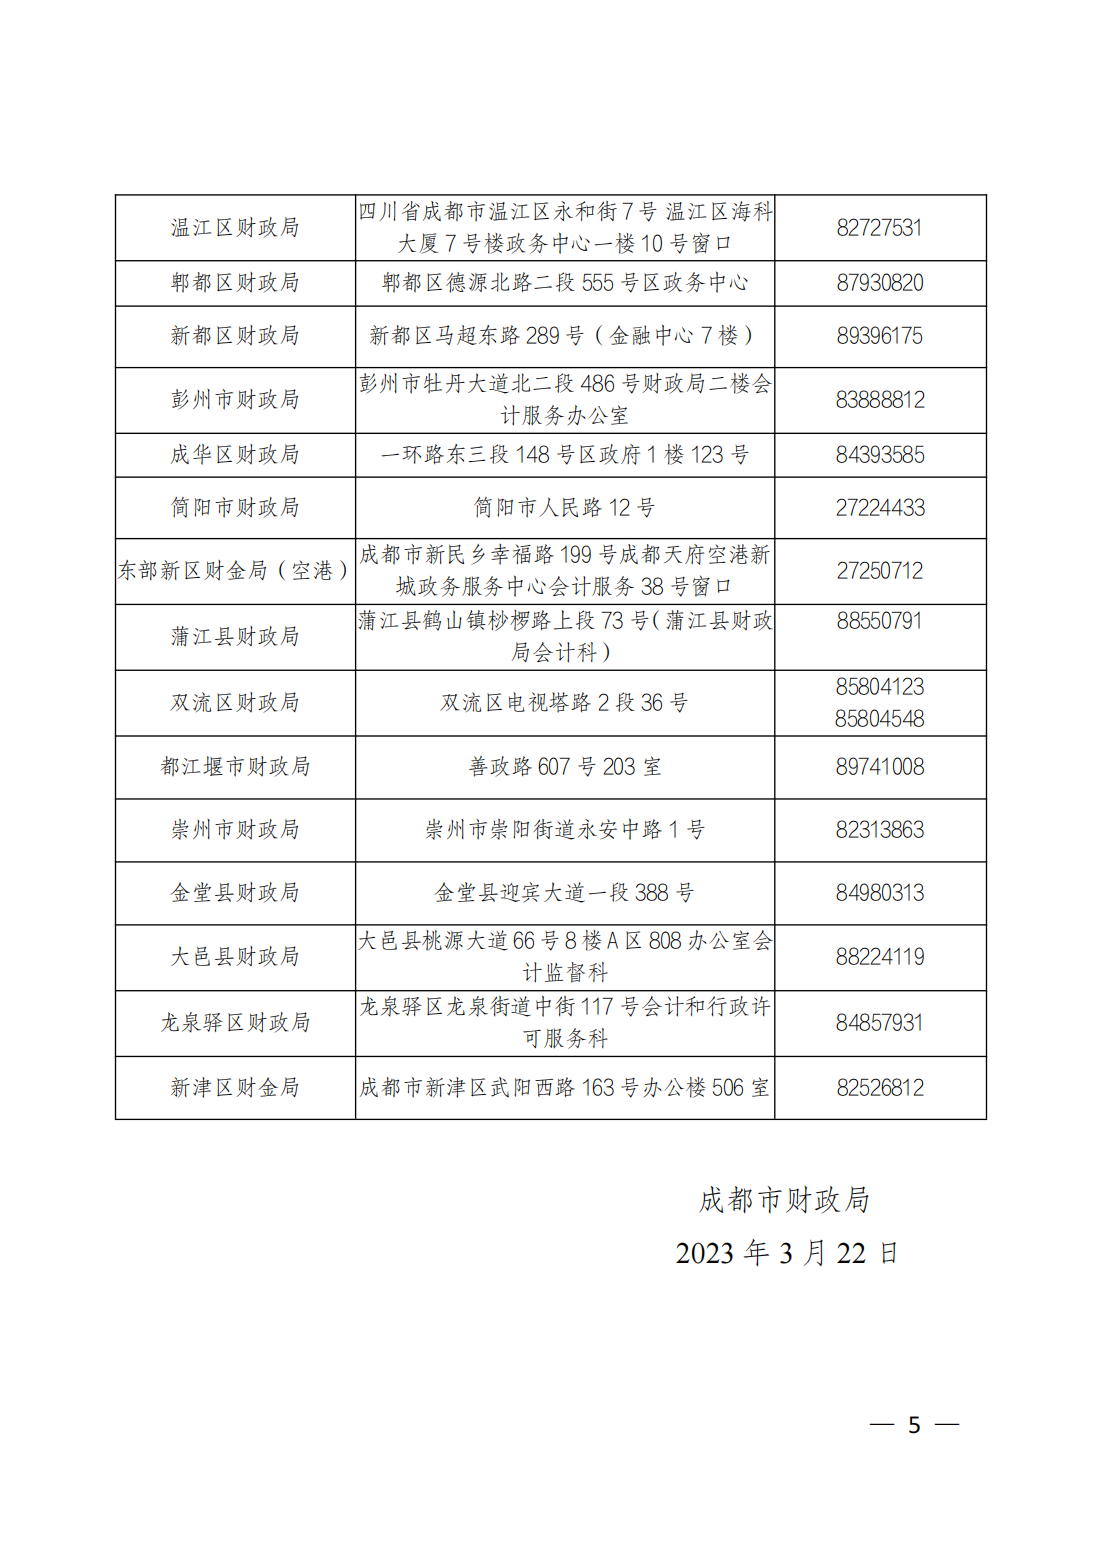 四川成都2022年中级会计资格证书领取的通知